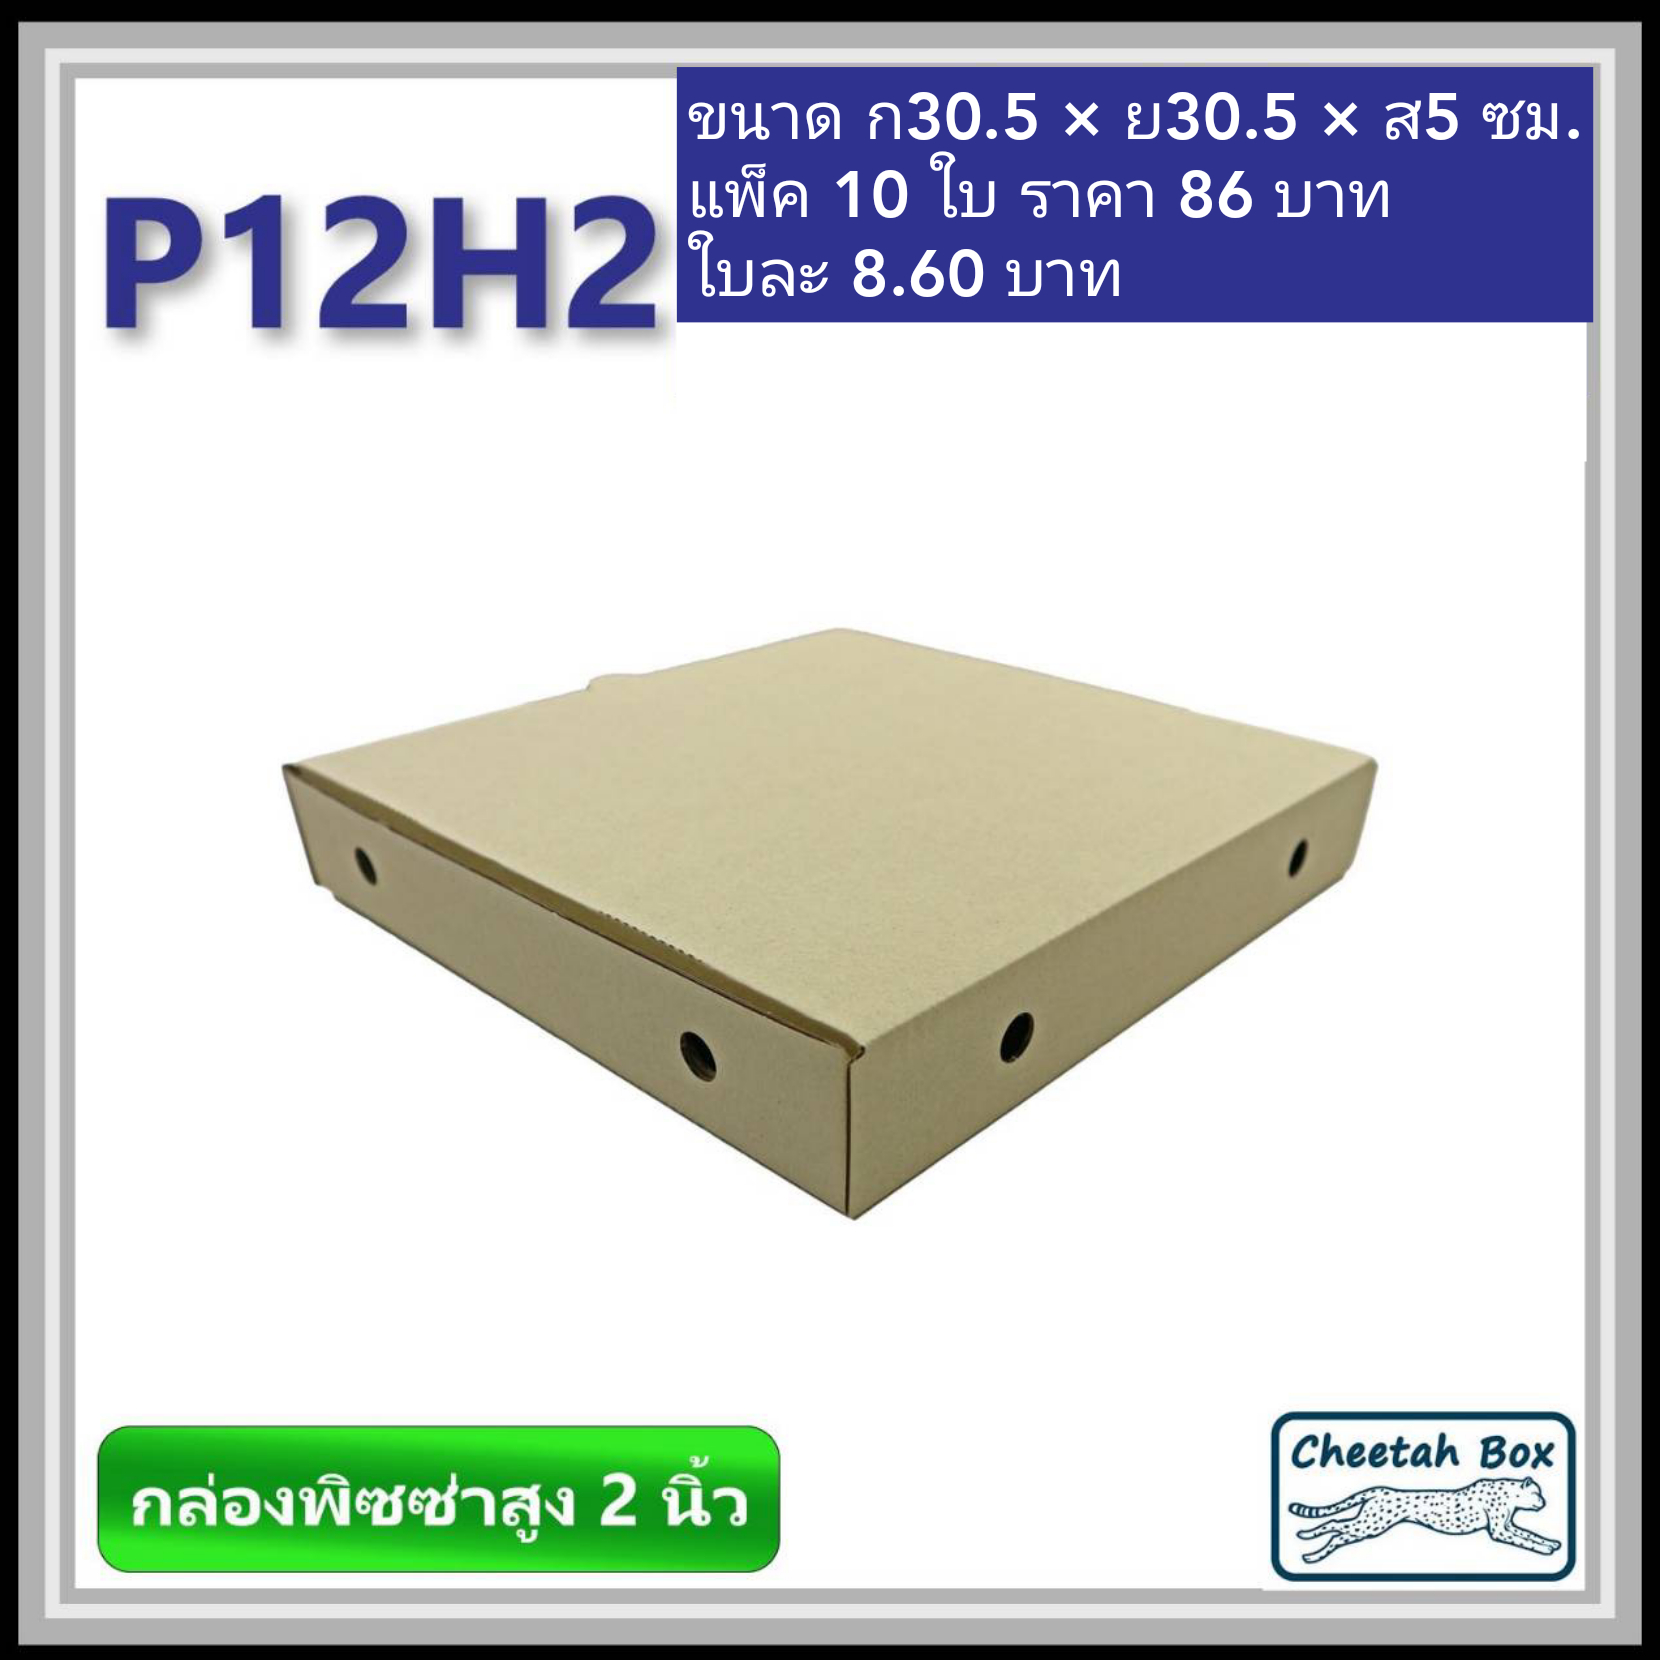 กล่องพิซซ่า 12 นิ้วสูง 2 นิ้ว รหัส P12H2 ไม่พิมพ์ (Pizza Box) ขนาด 30.5W x 30.5L x 5.0H cm.